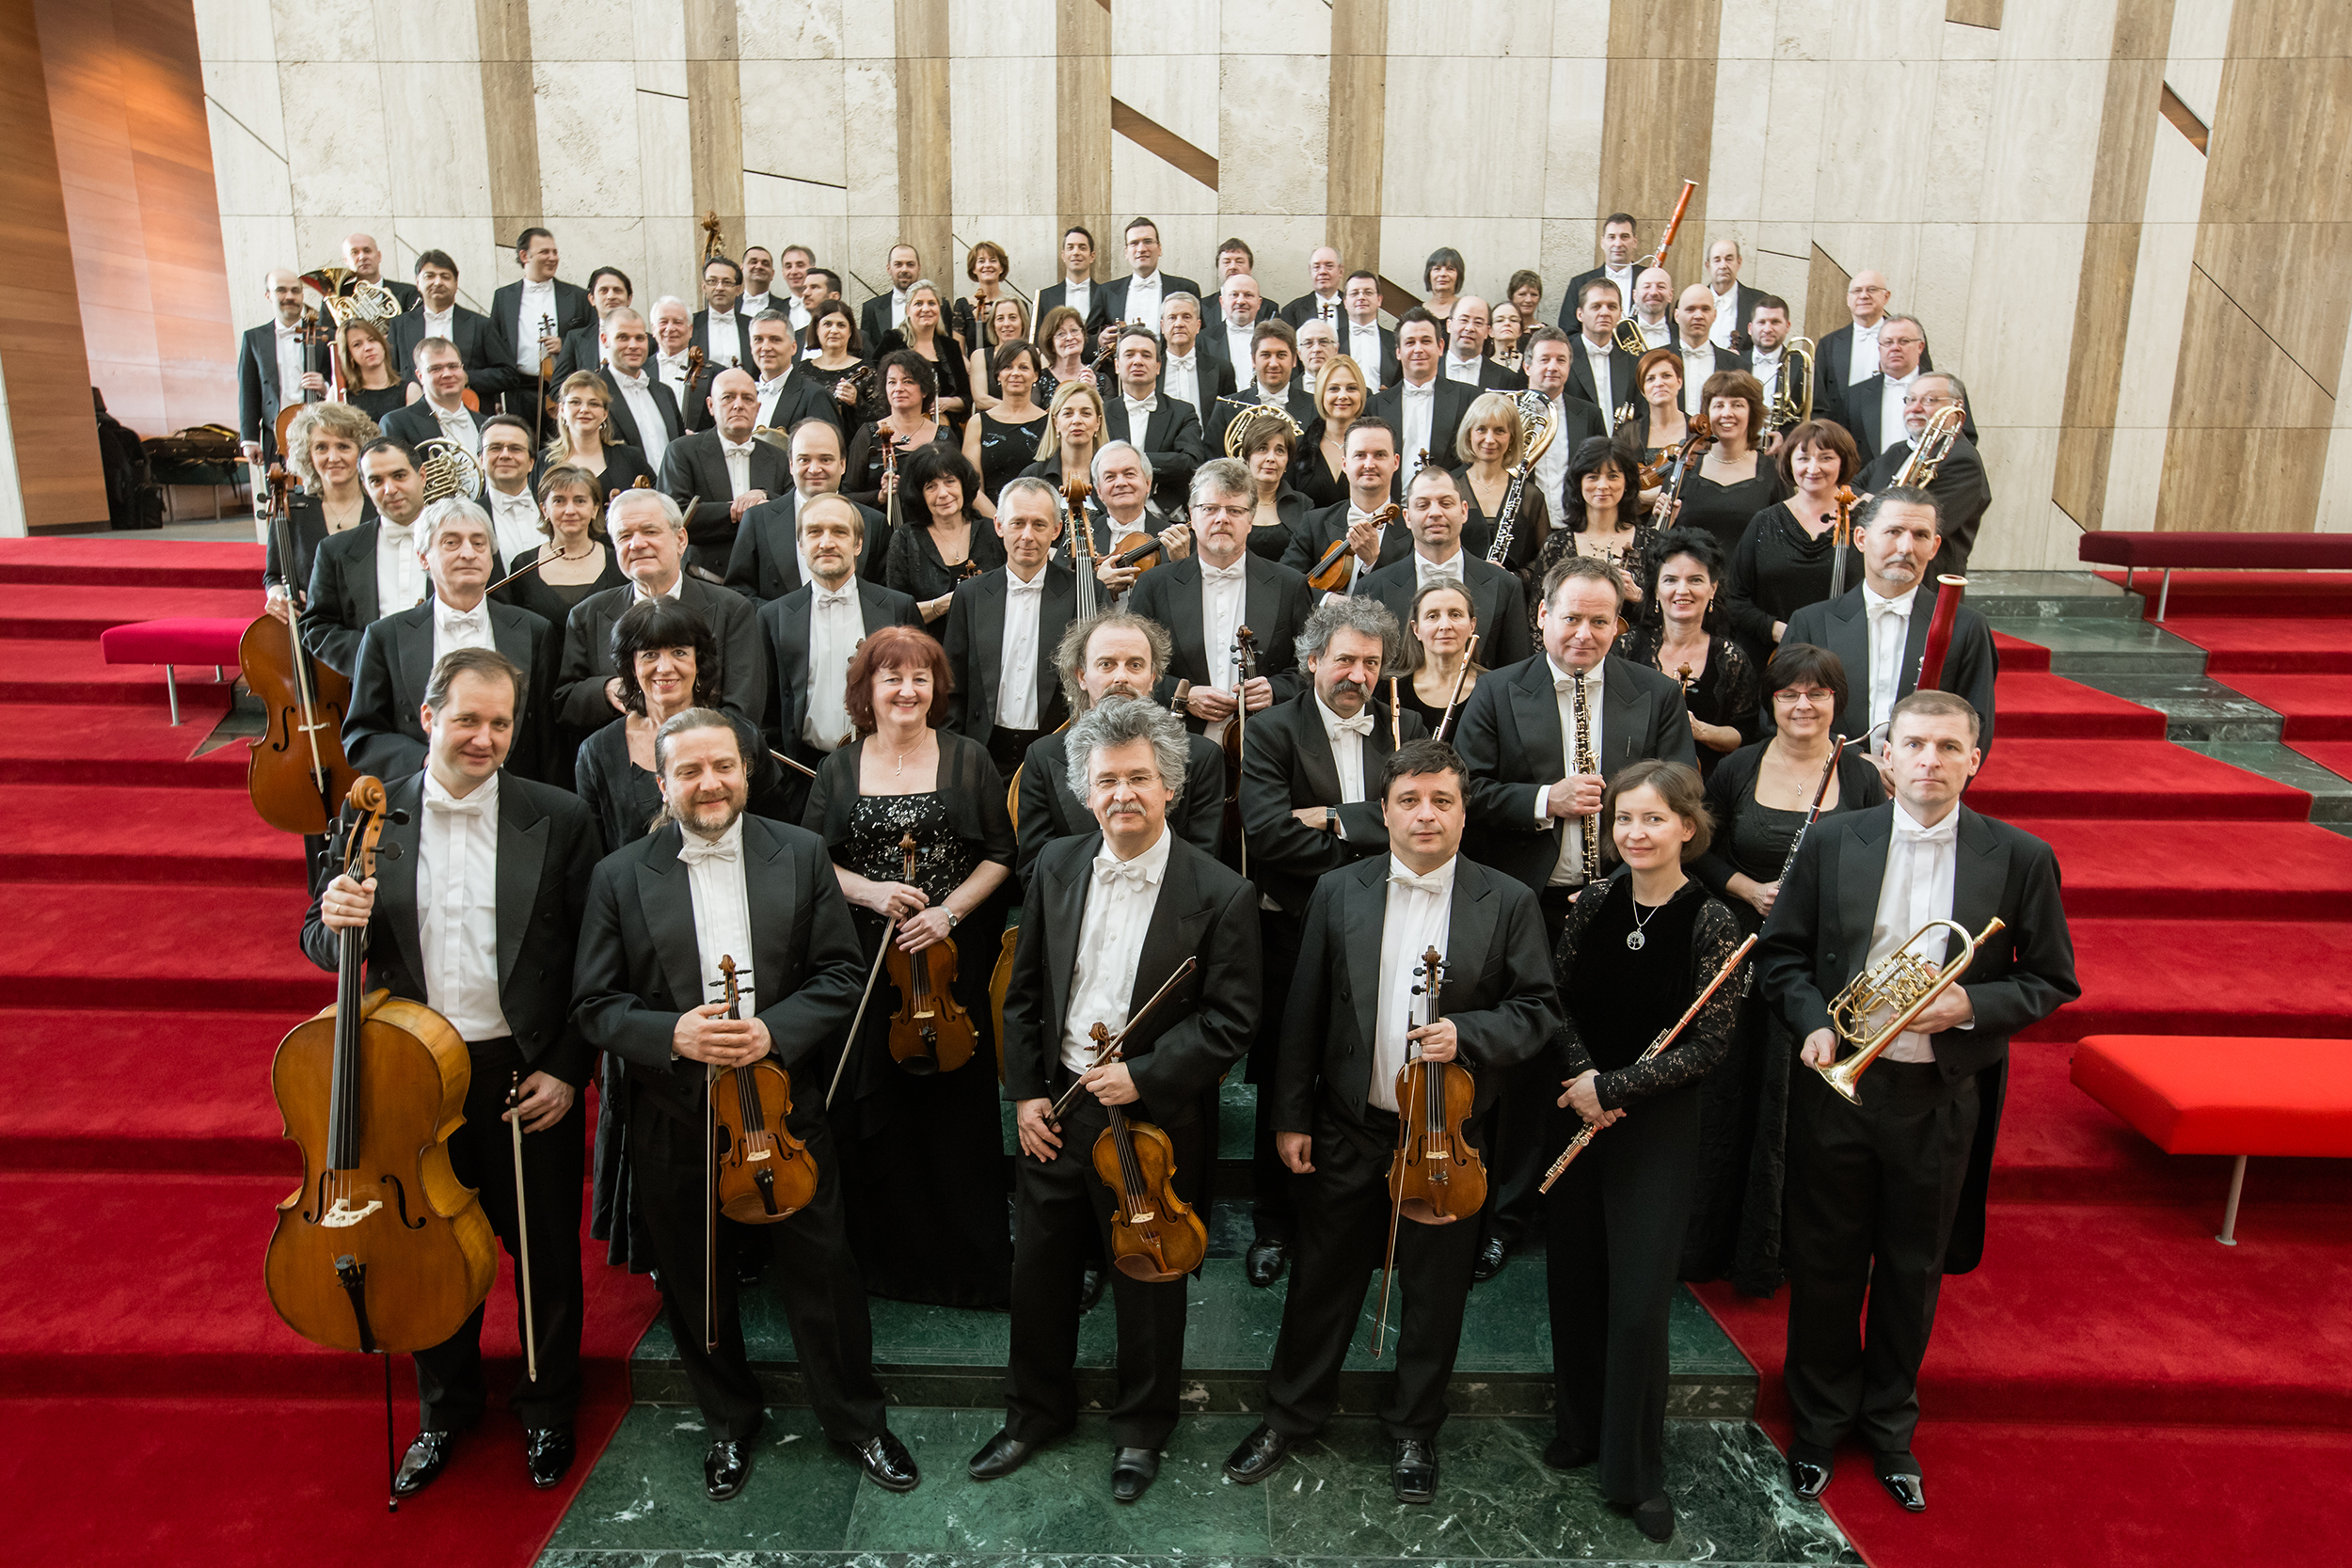 ハンガリー国立フィルハーモニー管弦楽団